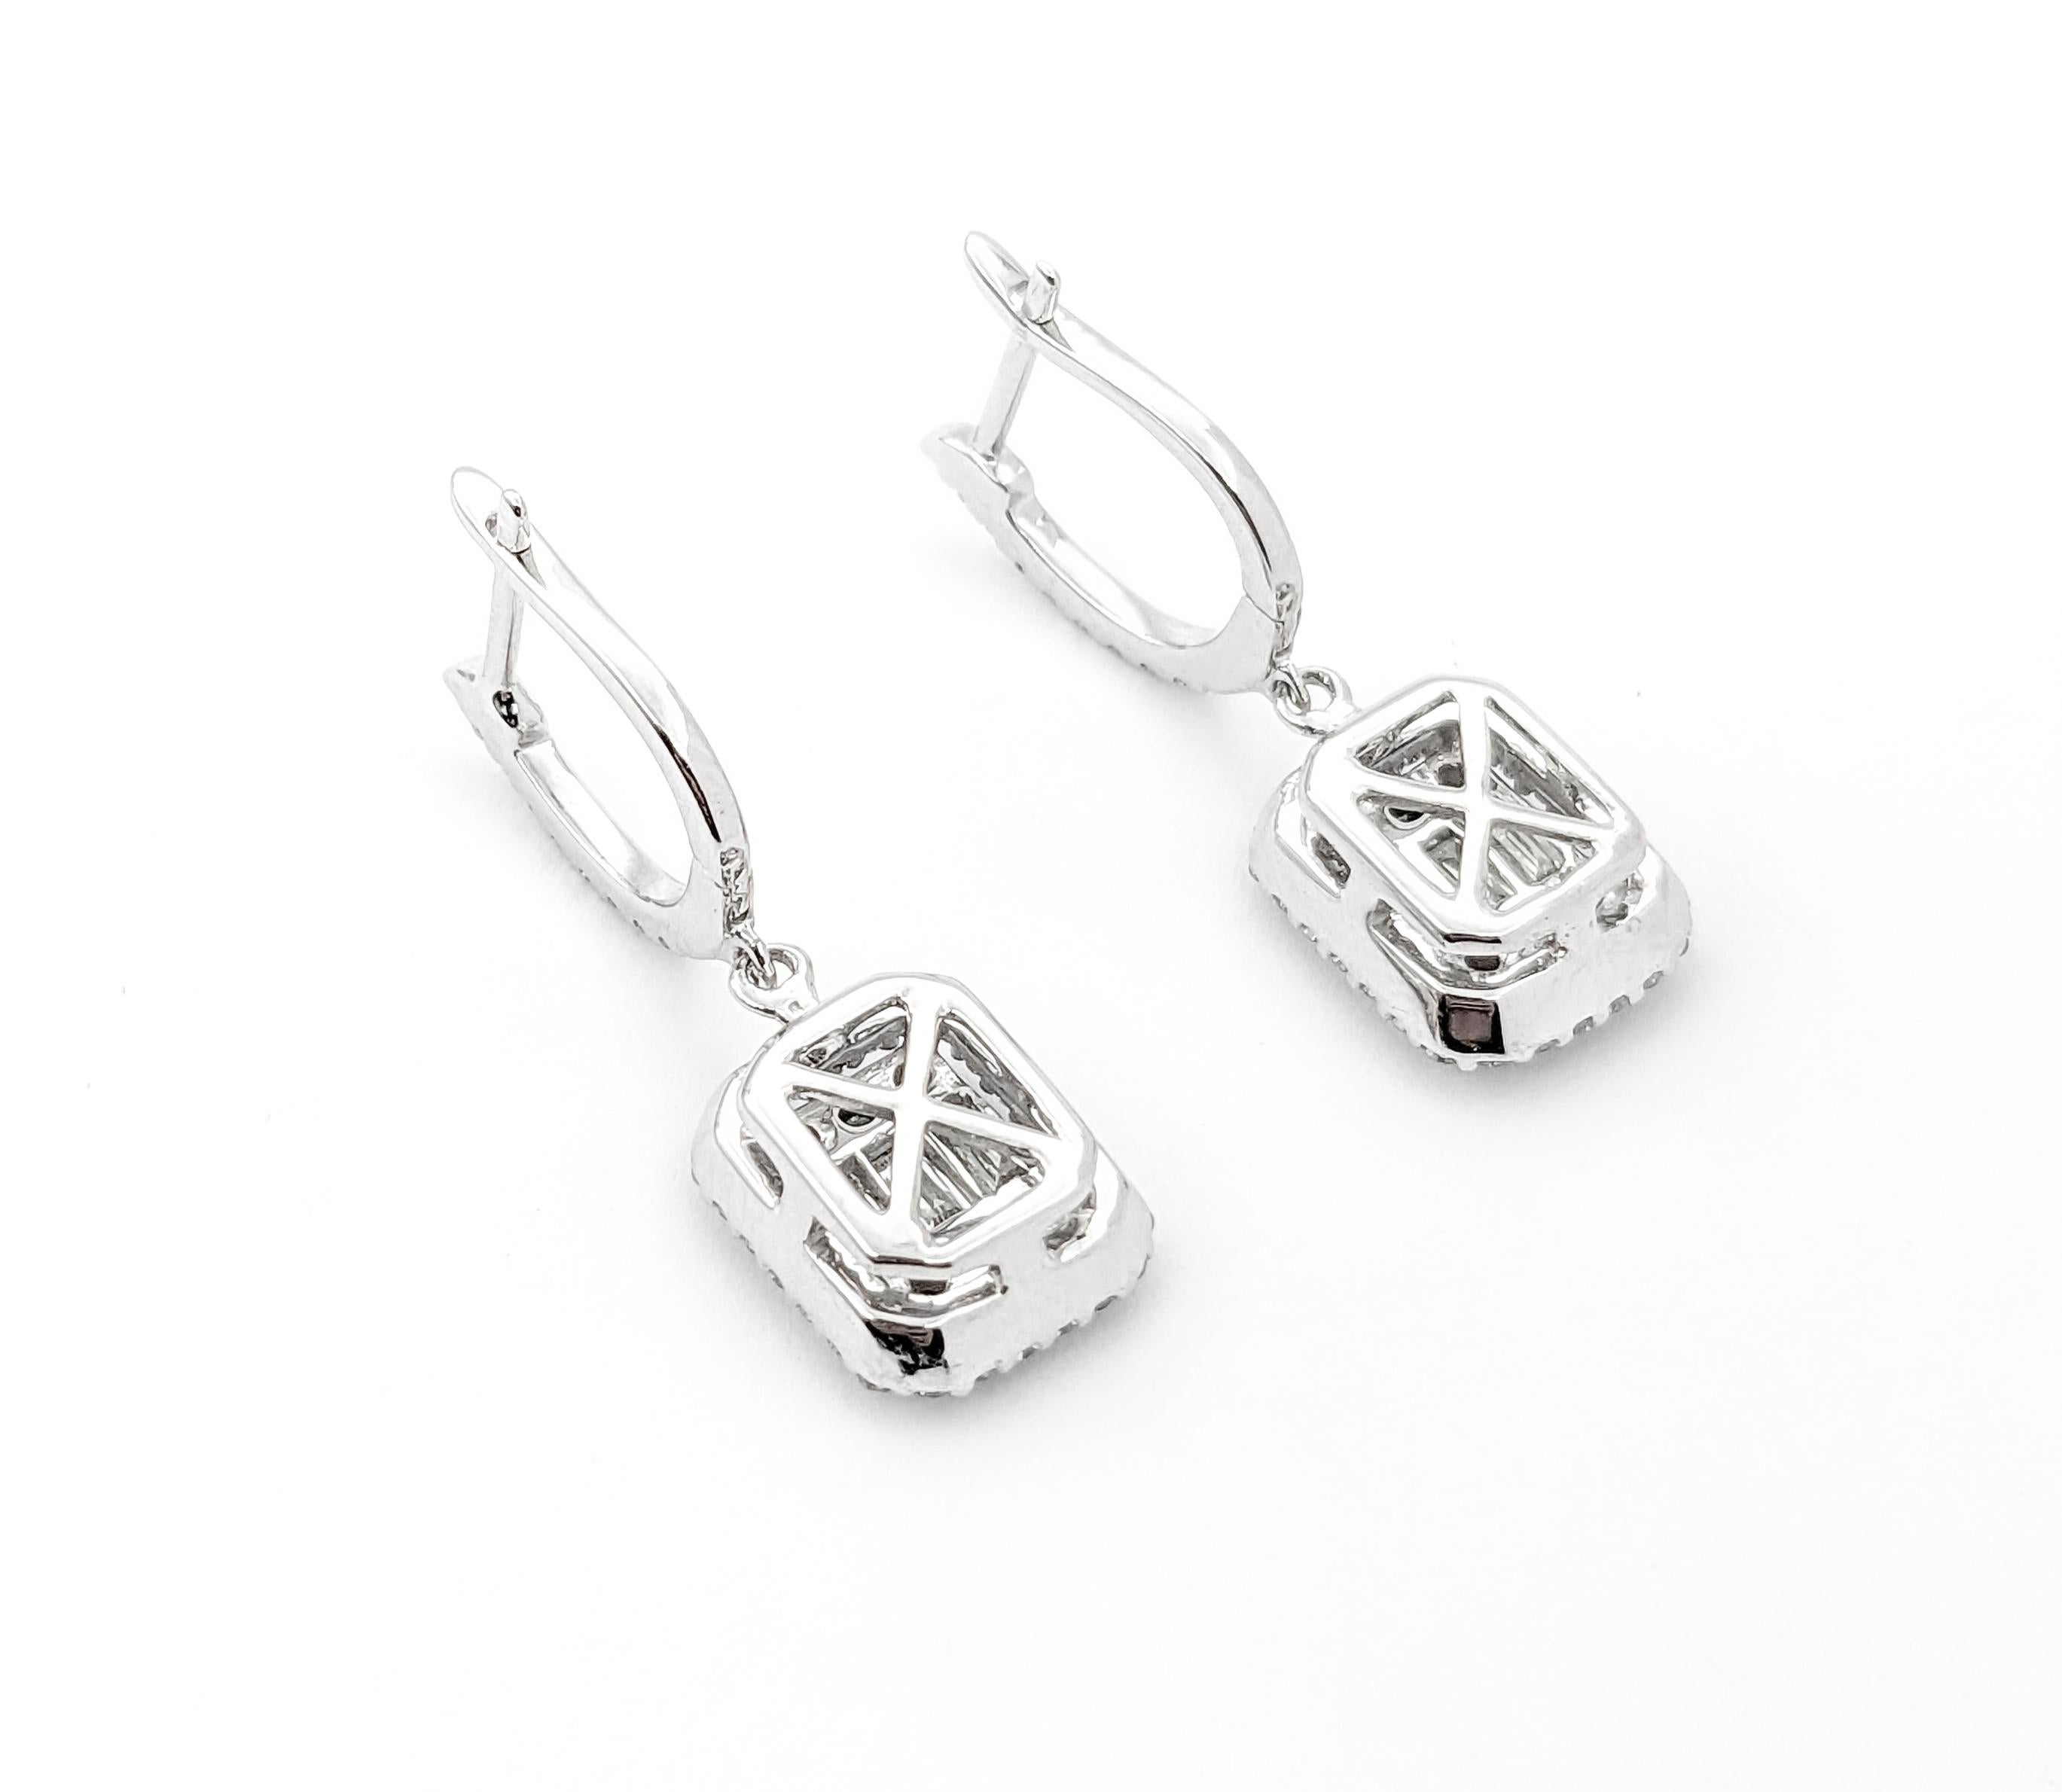 Boucles d'oreilles cocktail pendantes en or blanc et diamant de 1,25ctw

Whiting présente ces exquises boucles d'oreilles mode en diamant, méticuleusement fabriquées en or blanc 14kt. Elles sont ornées de 1,25ctw de diamants et sont élégamment